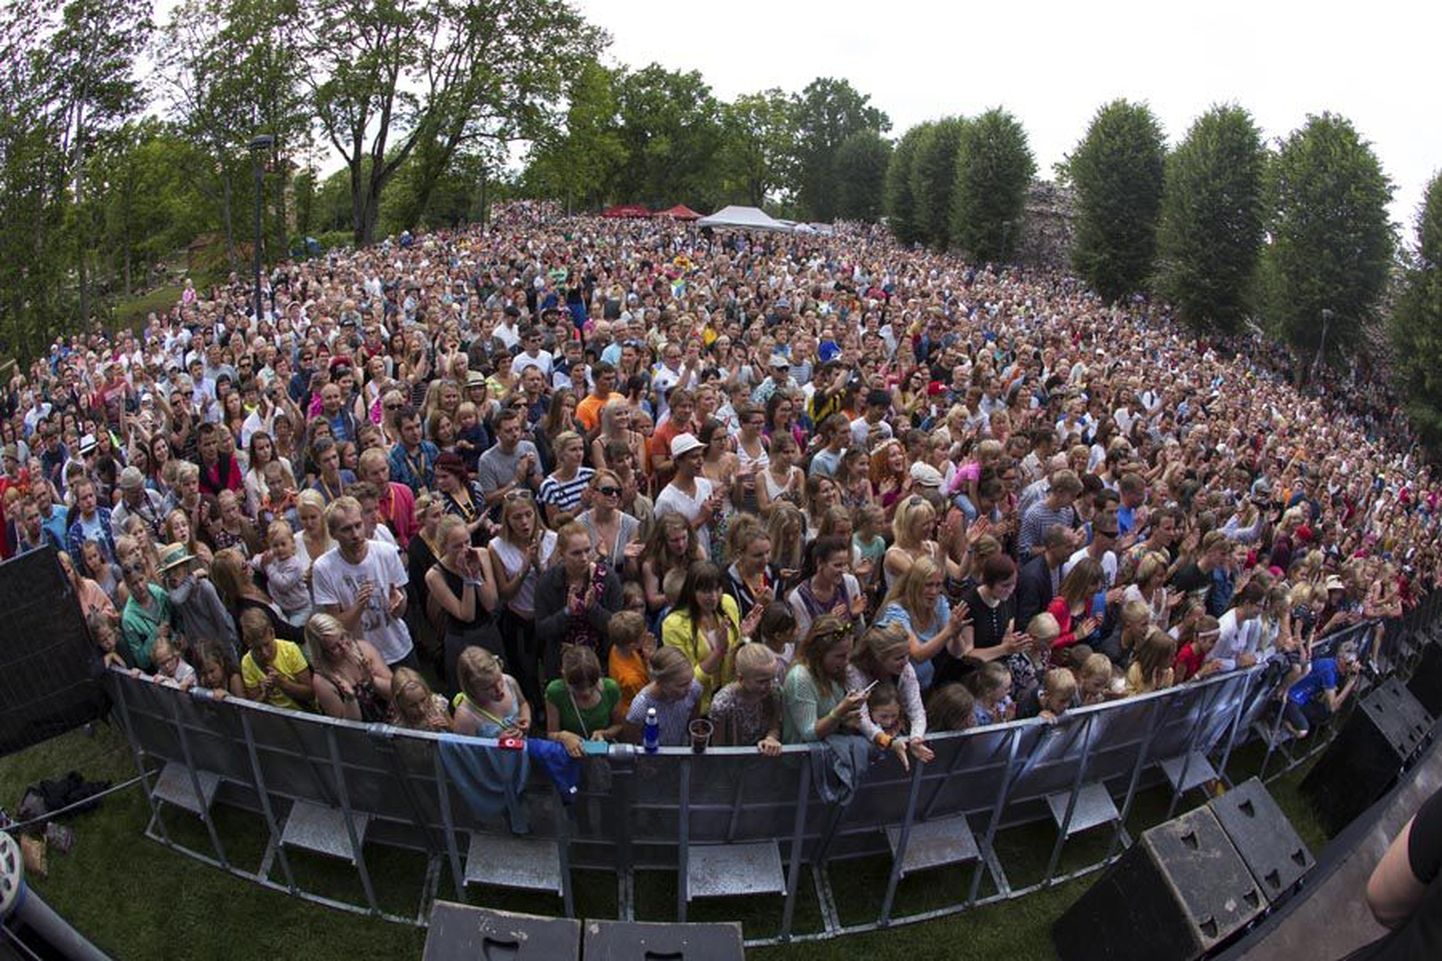 Tuhandeid kuulajaid kohale meelitanud Curly Strings lõi 23. Viljandi pärimusmuusika festivali publikurekordi. Nii suurt hulka inimesi pole Kirsimäel varem nähtud.